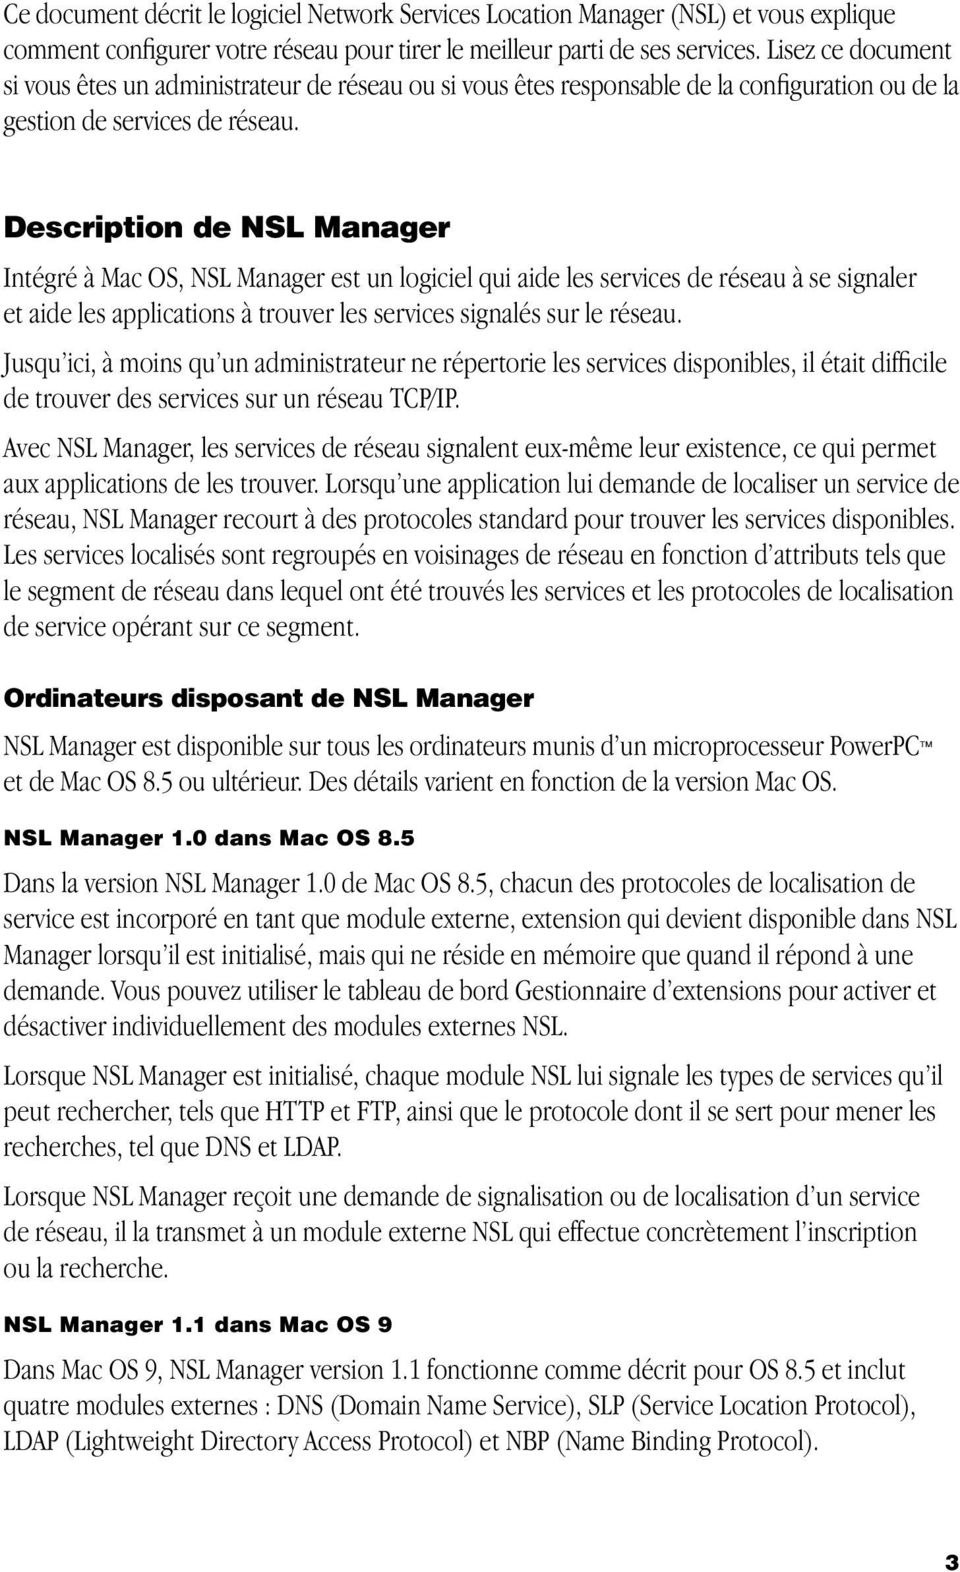 Description de NSL Manager Intégré à Mac OS, NSL Manager est un logiciel qui aide les services de réseau à se signaler et aide les applications à trouver les services signalés sur le réseau.